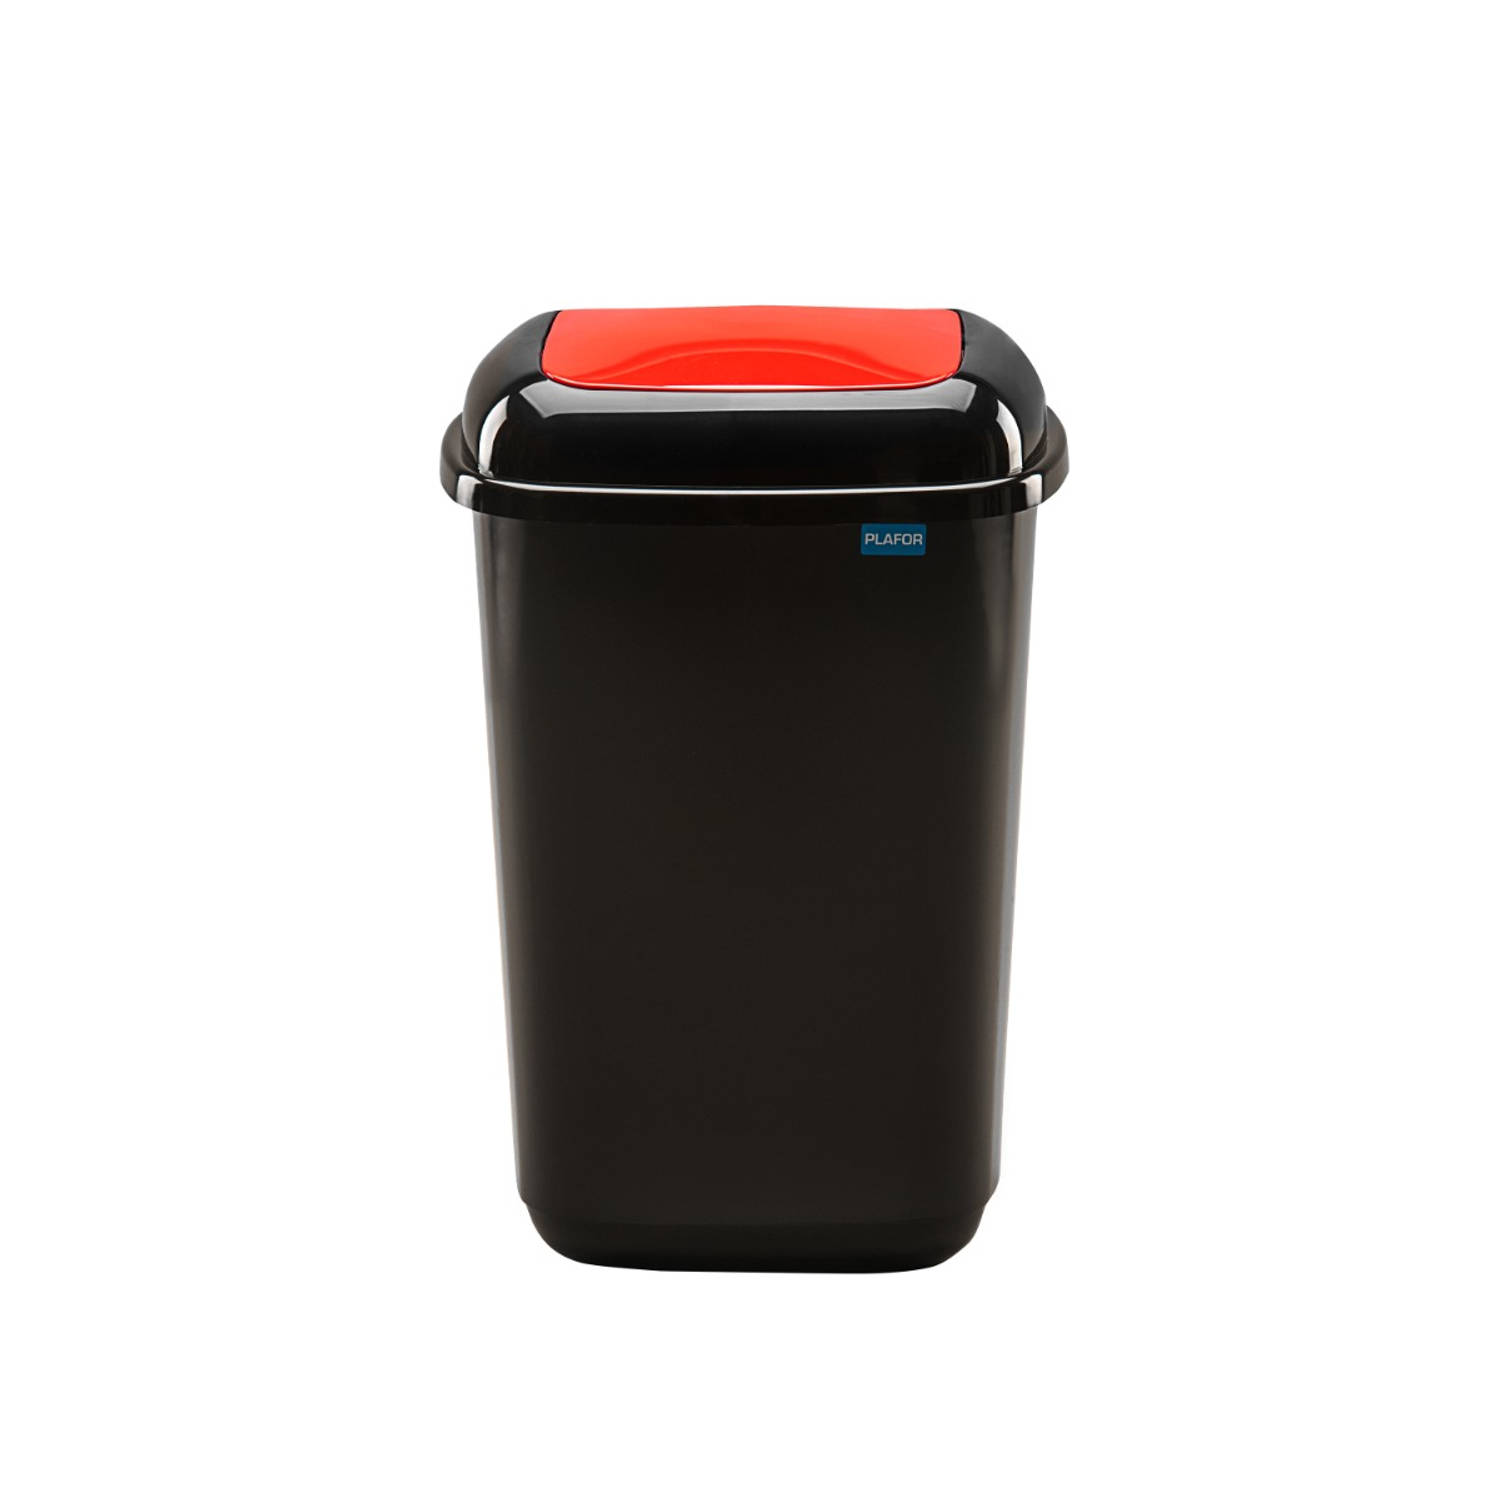 Plafor Quatro Bin, Prullenbak voor afvalscheiding - 45L – Rood/Zwart - Afvalbak voor gemakkelijk Afval Scheiden en Recycling - Afvalemmer - Vuilnisbak voor Huishouden, Keuken en Ka